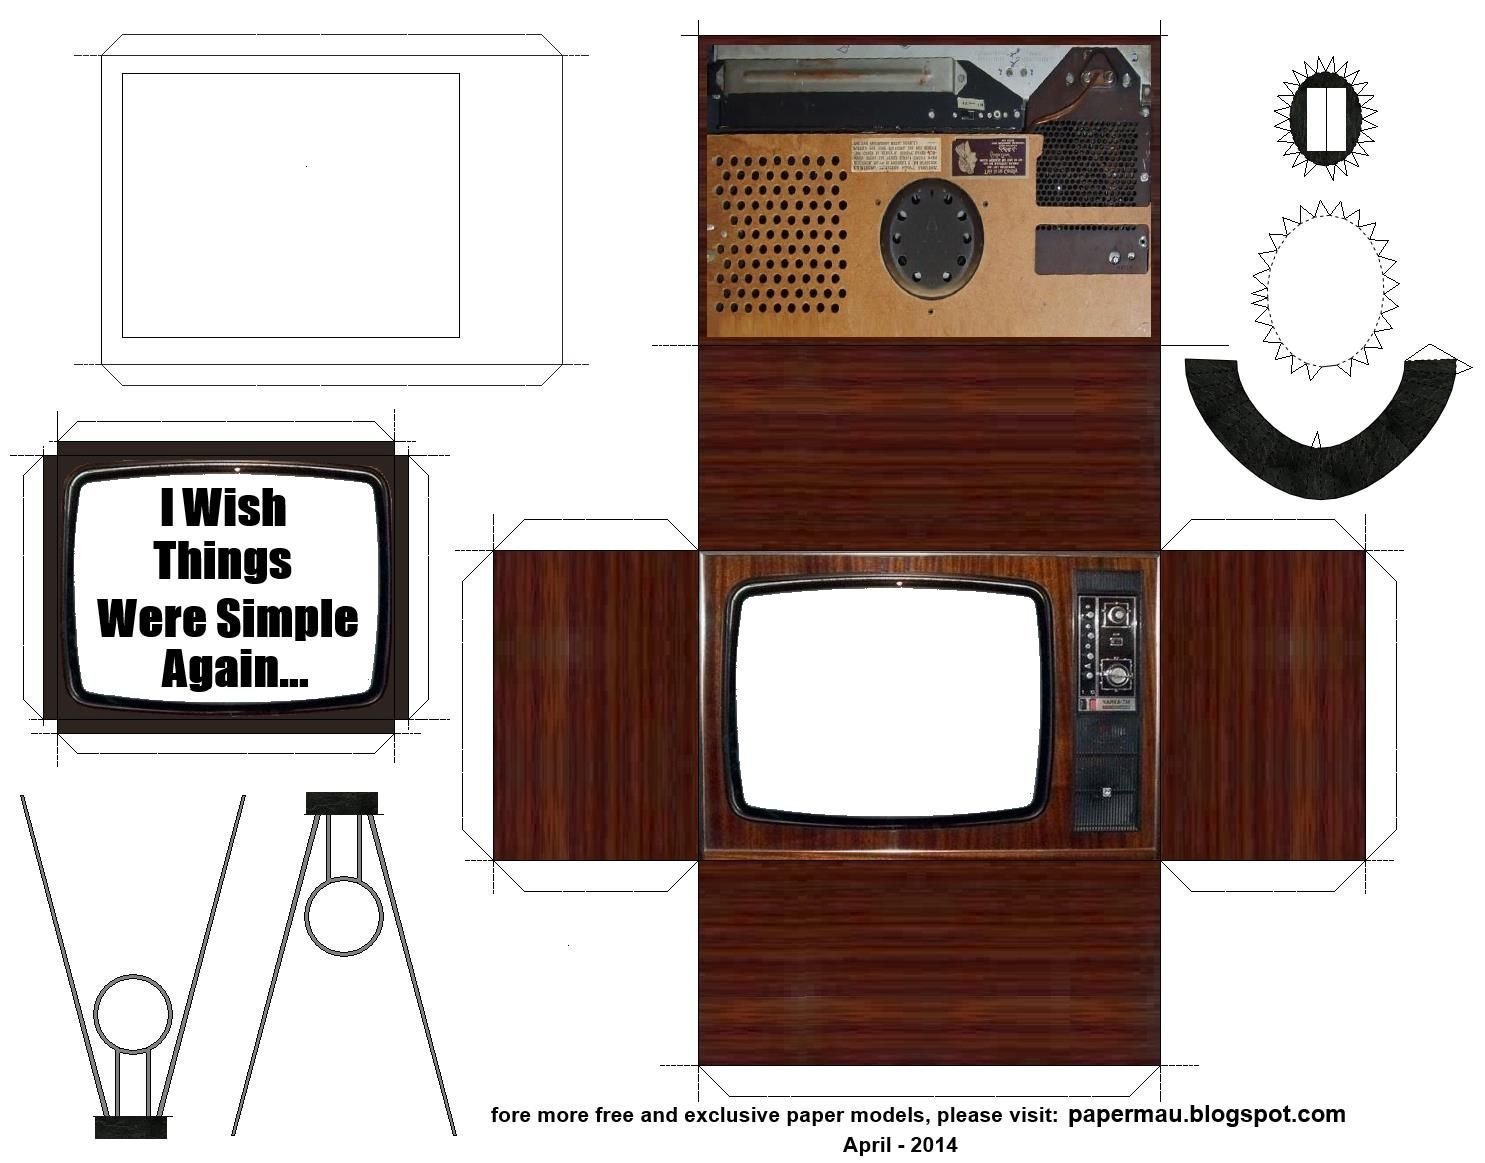 Поделки телевизор из картона с экраном идеи по изготовлению своими руками фото